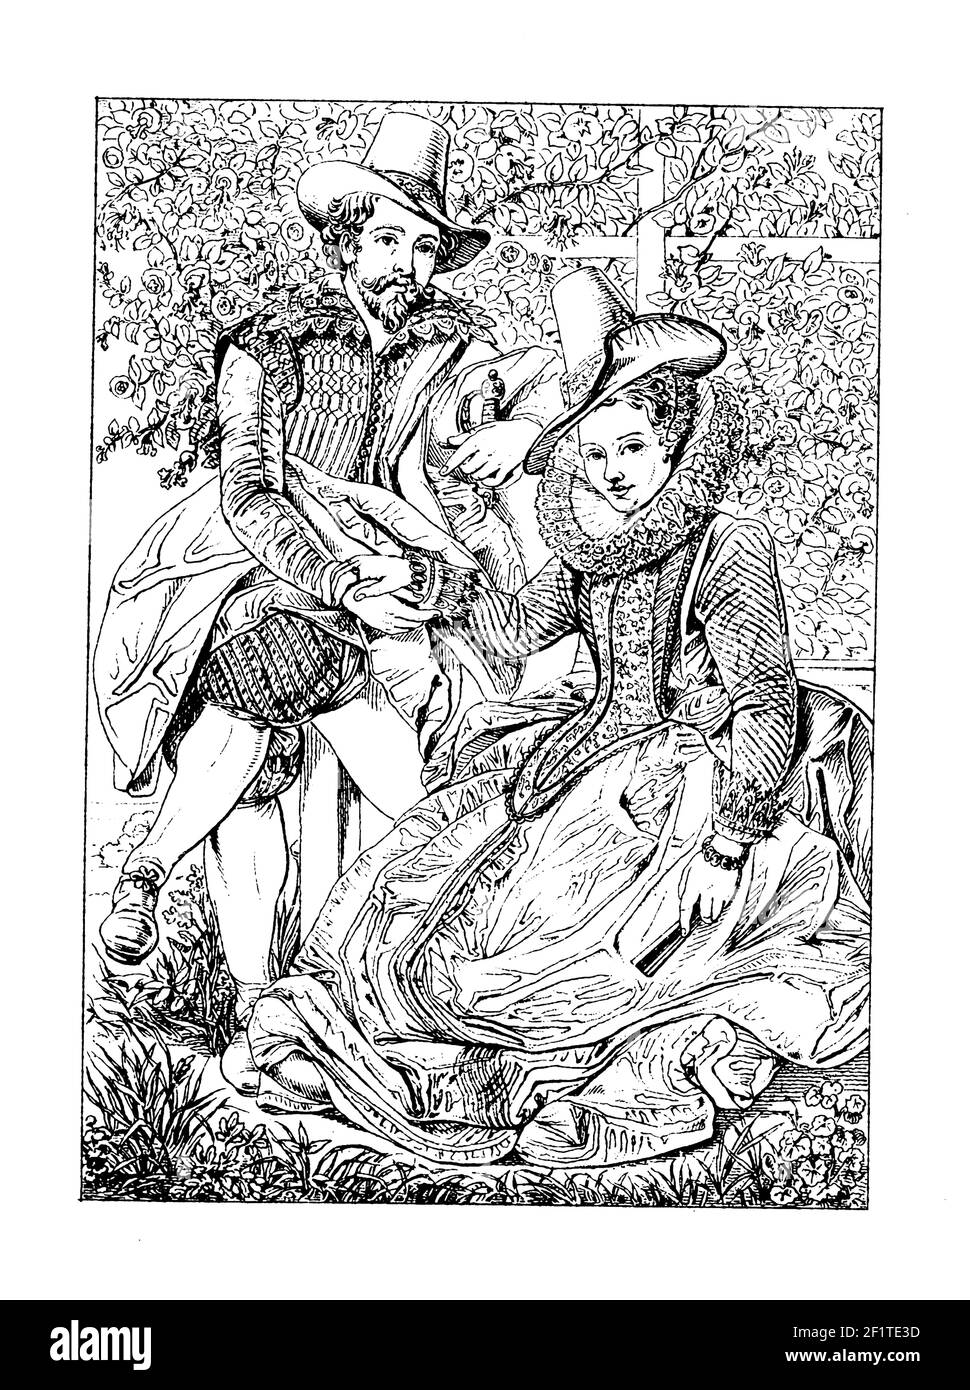 Incisione ottocentesca di una foto di Rubens e di sua moglie Isabella Brent. Illustrazione pubblicata in Bilder-Atlas zur Weltgeschichte nach Kunstwerken Foto Stock